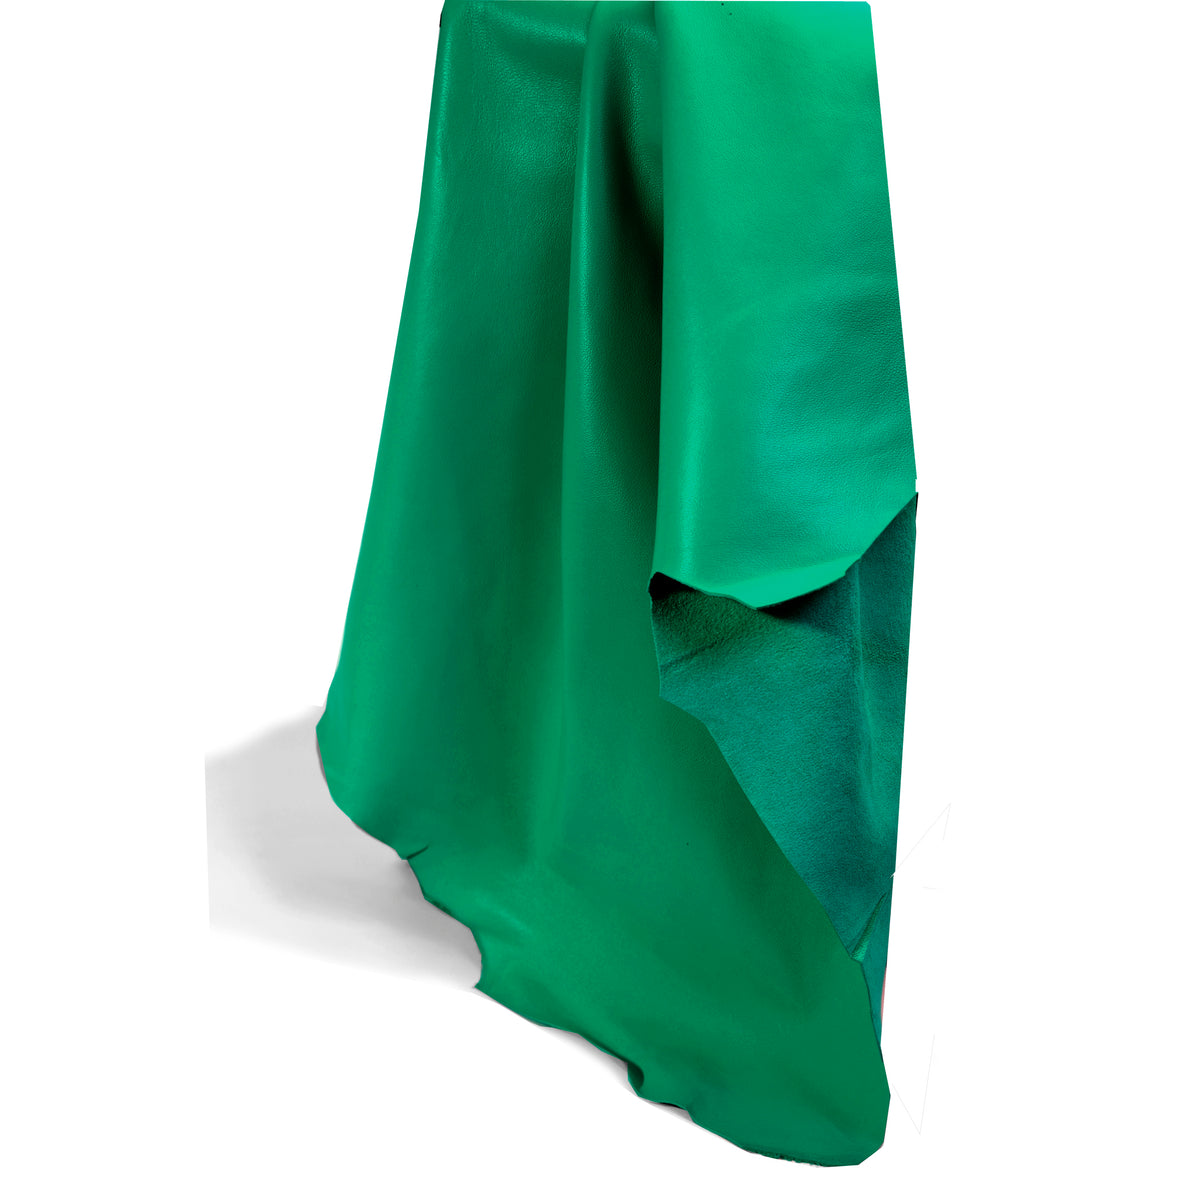 Emerald Green Lamb Clothing Leather | identityleathercraft